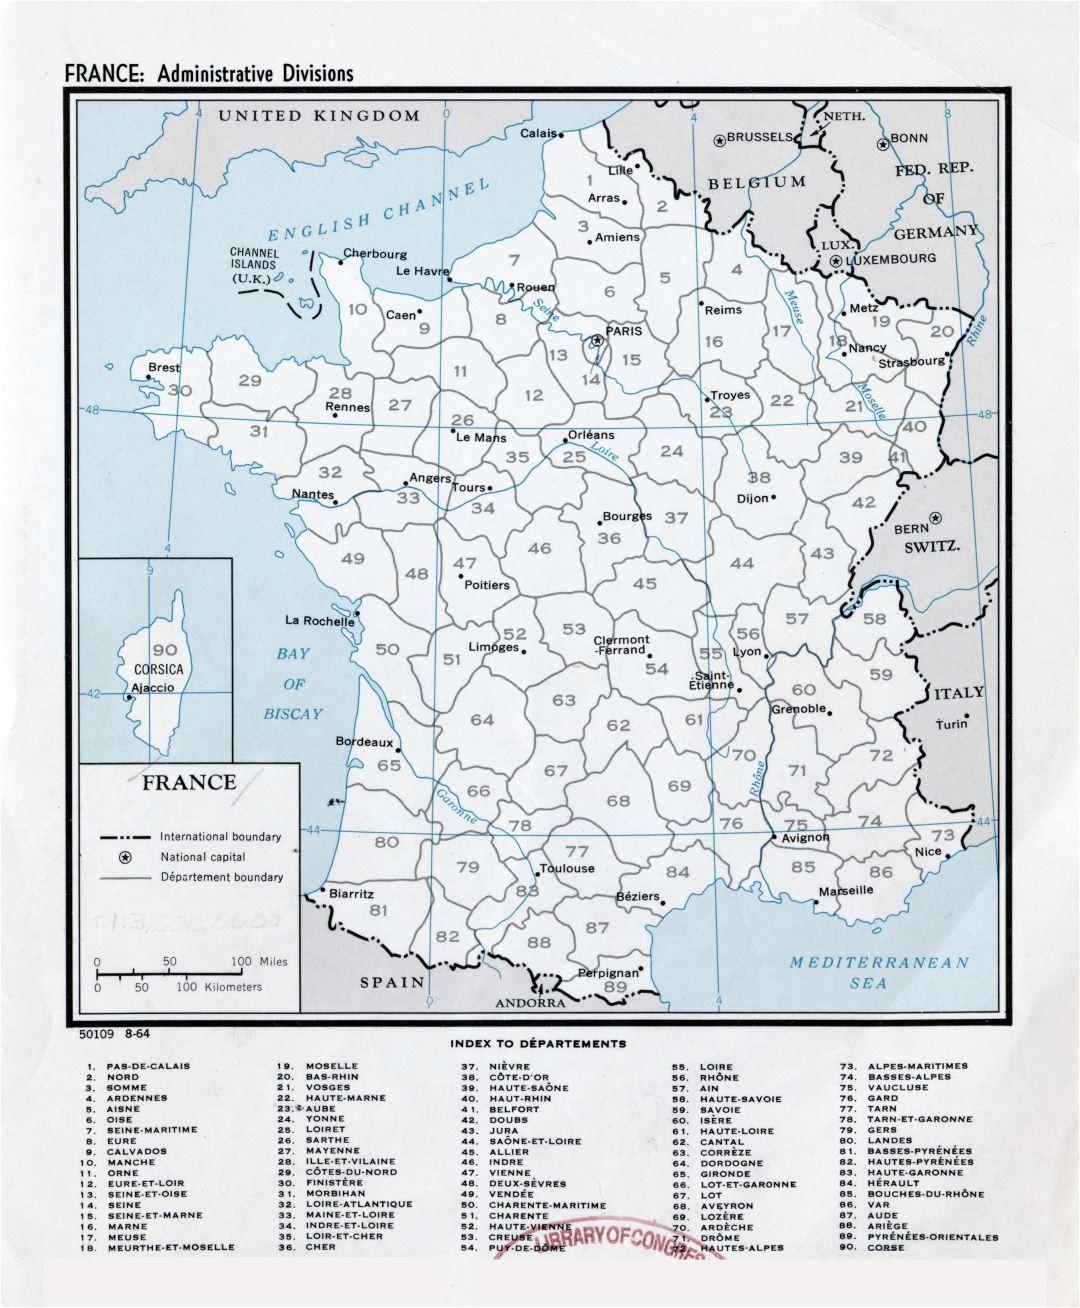 Gran escala divisiones administrativas mapa de Francia - 1964